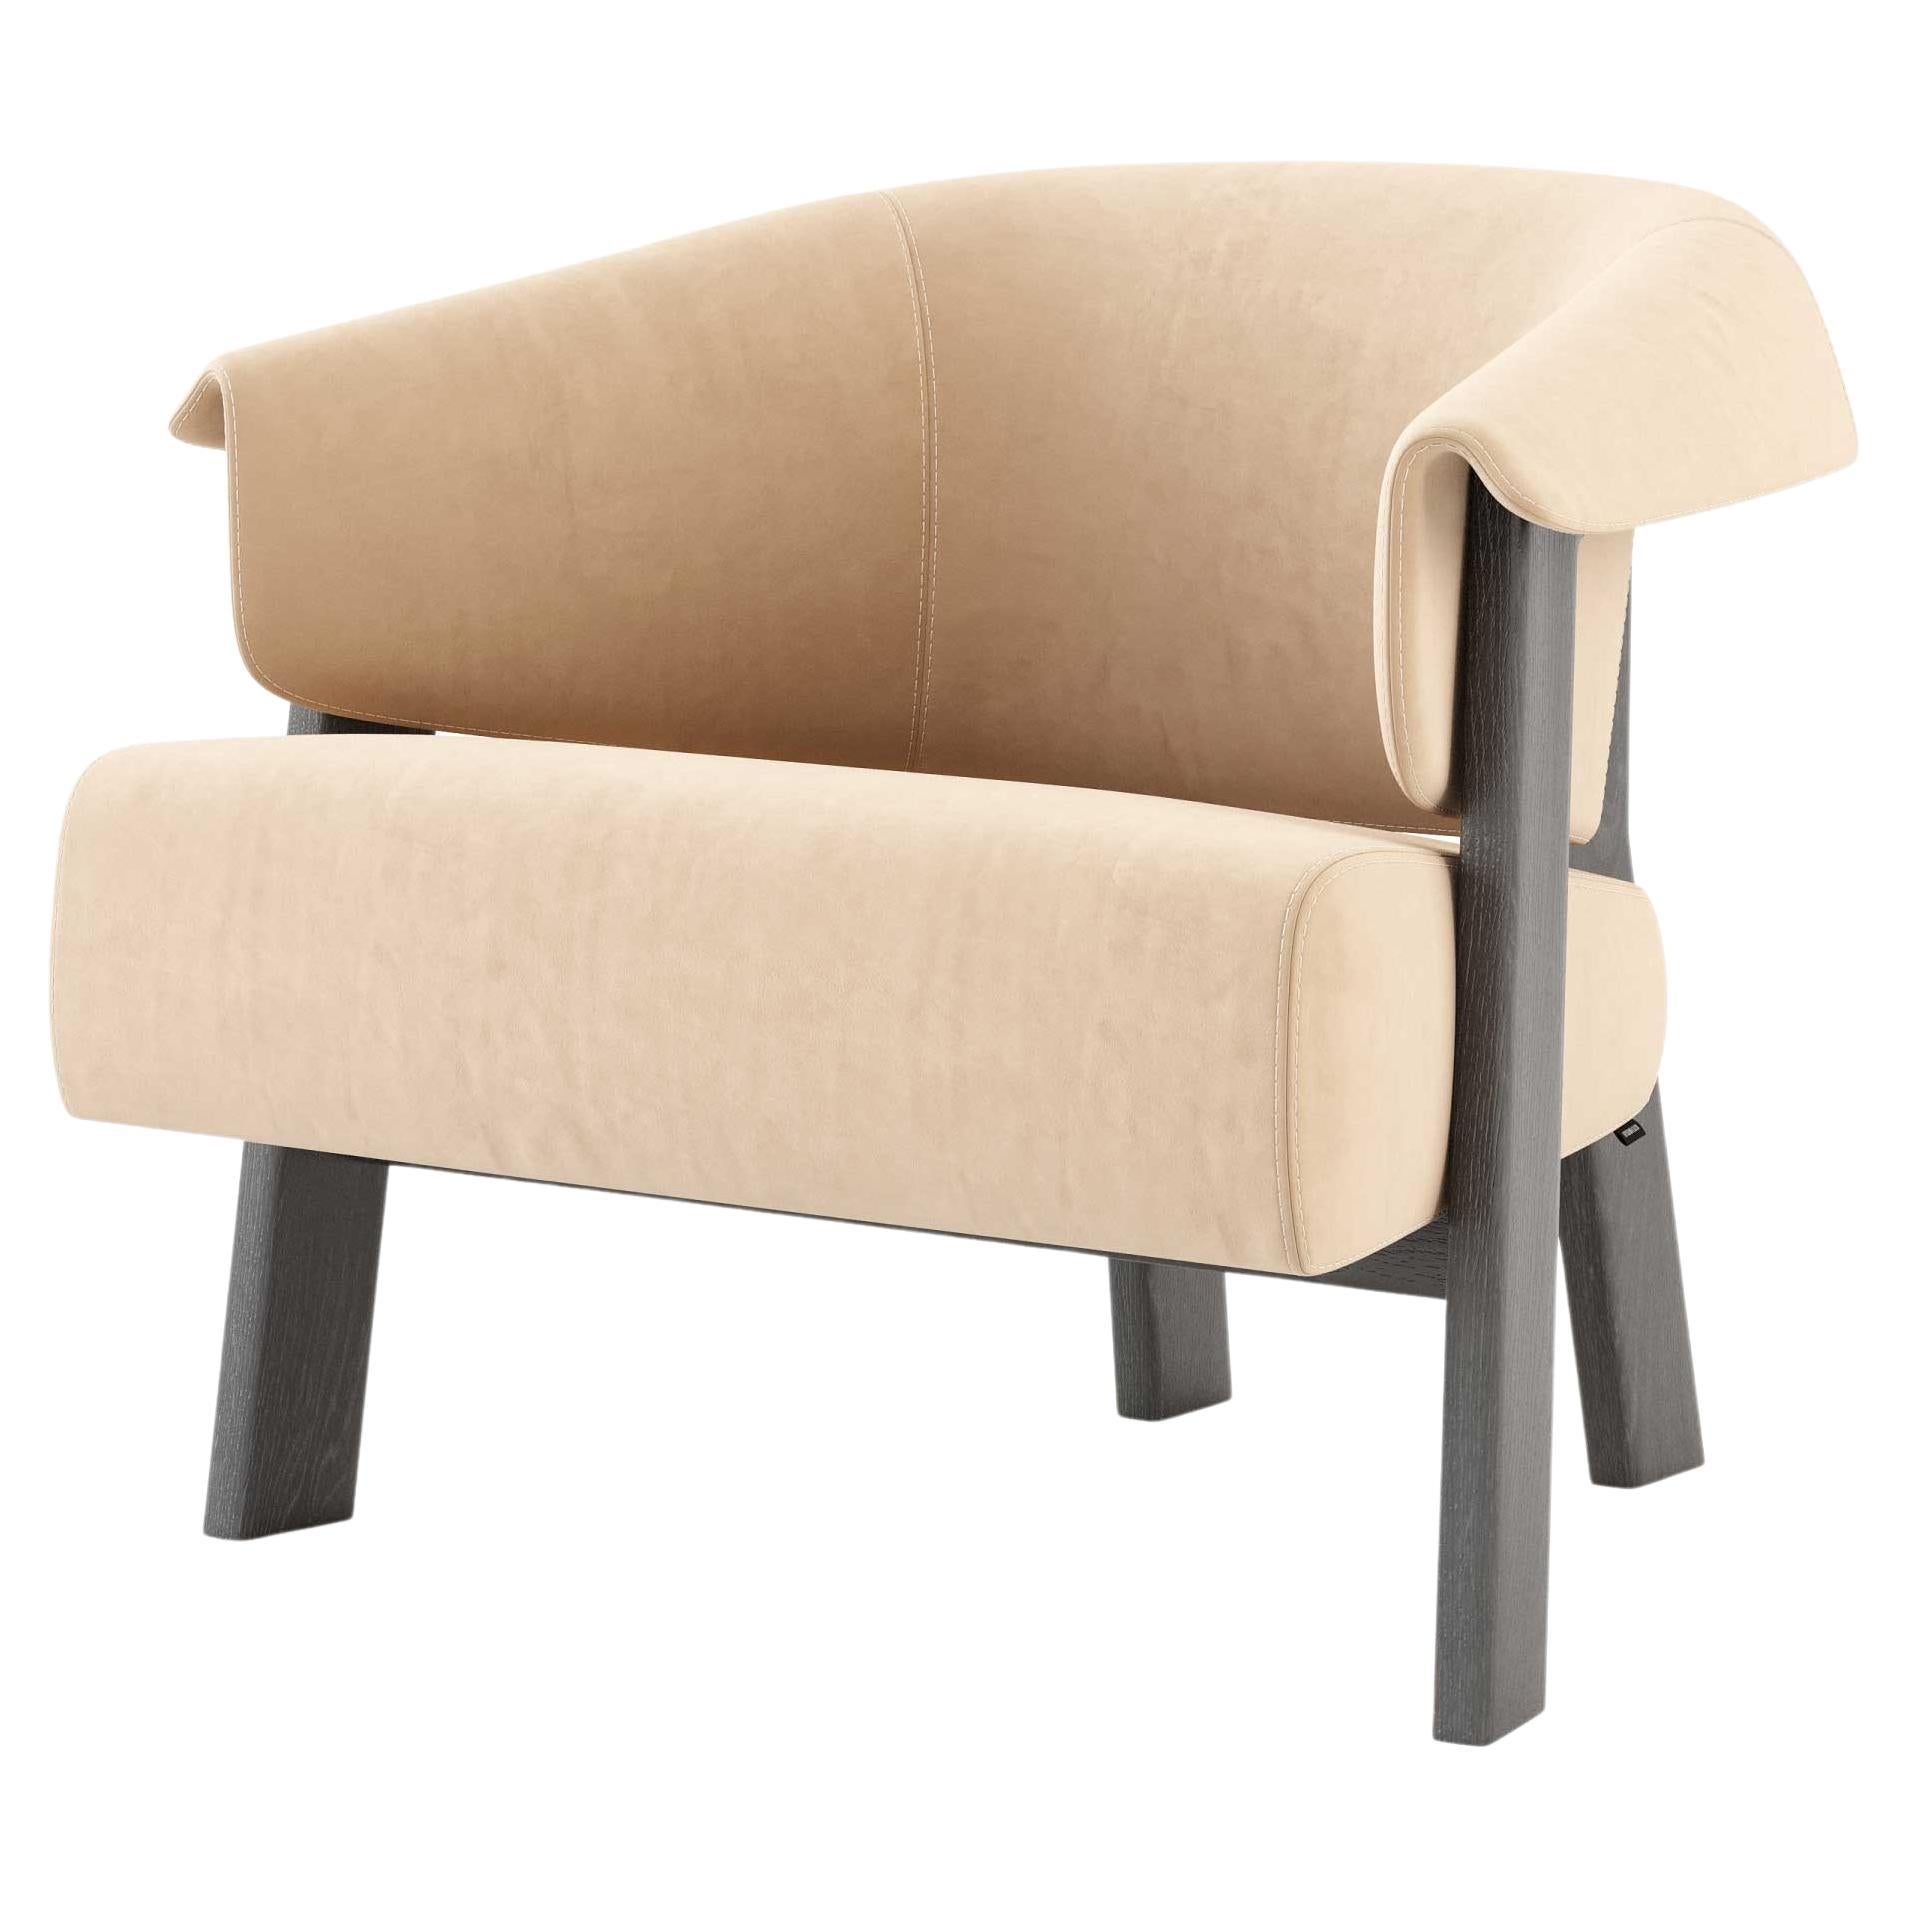 Moderner Toro-Sessel aus Eiche und Wildleder, handgefertigt von Stylish Club